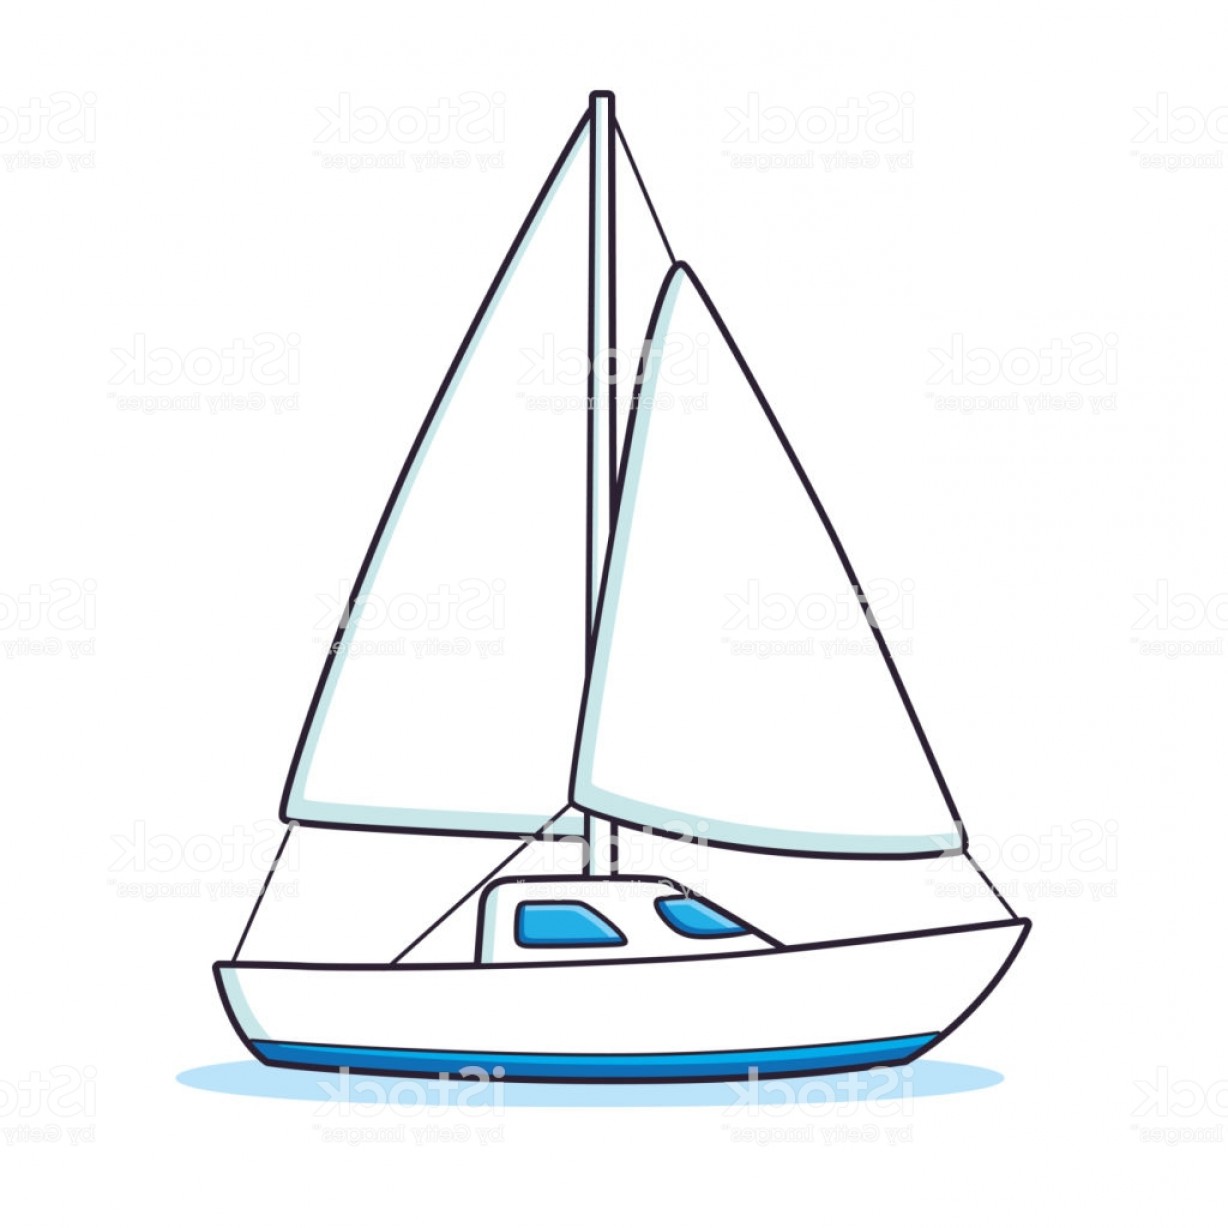 Sailboat Or Sailing Yacht Gm